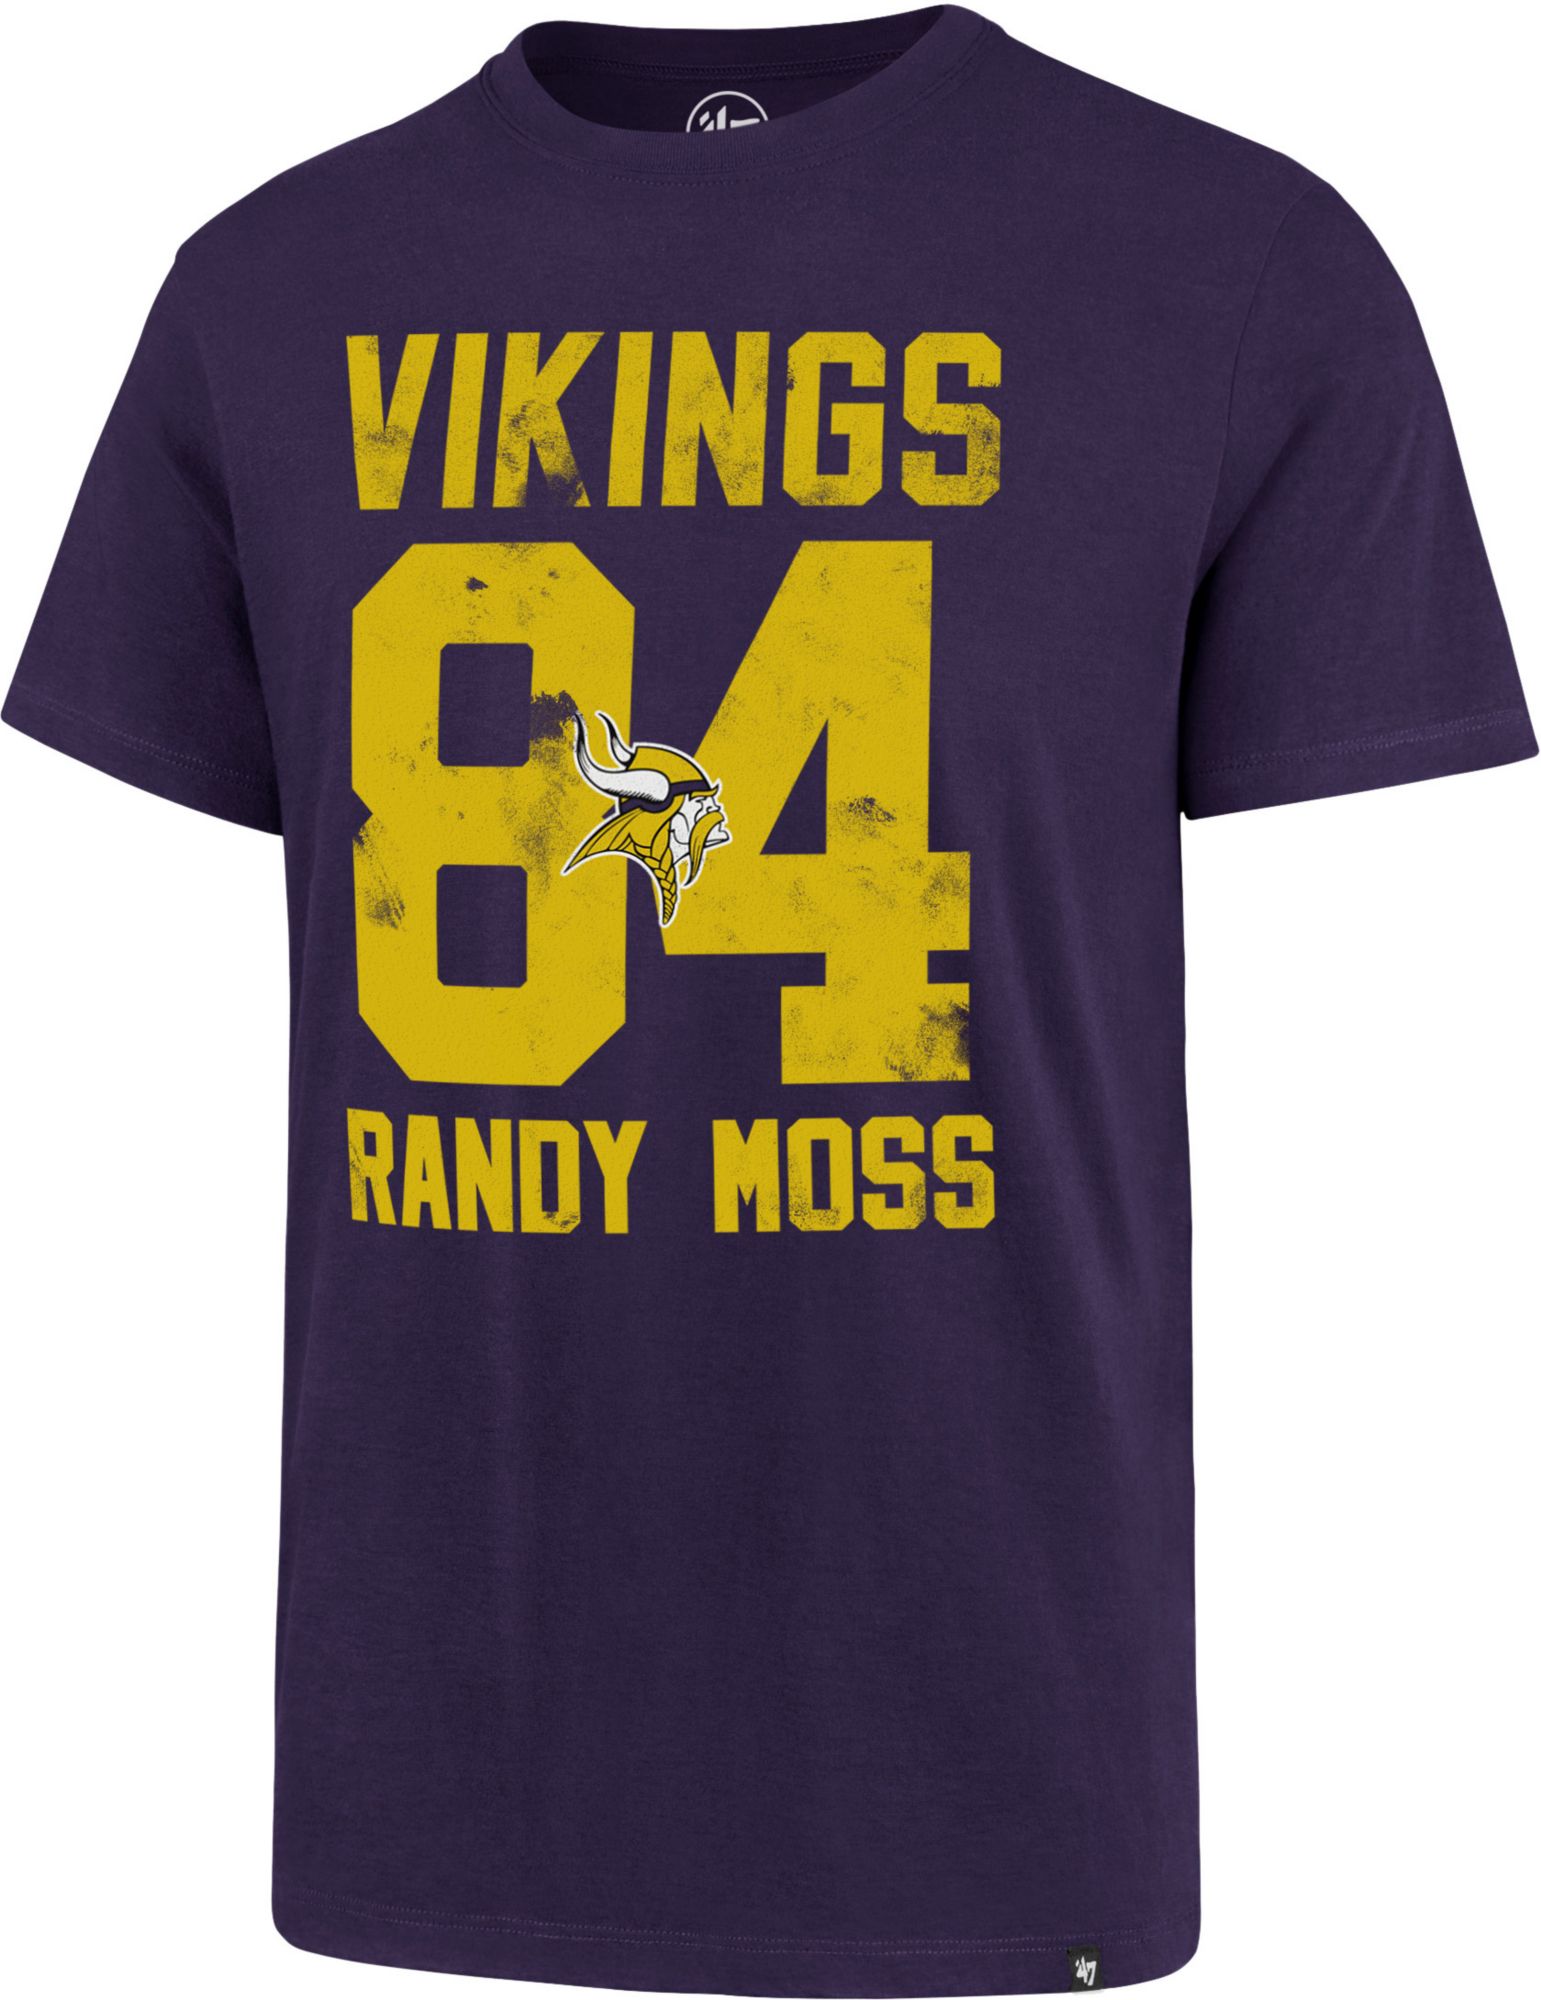 randy moss shirt